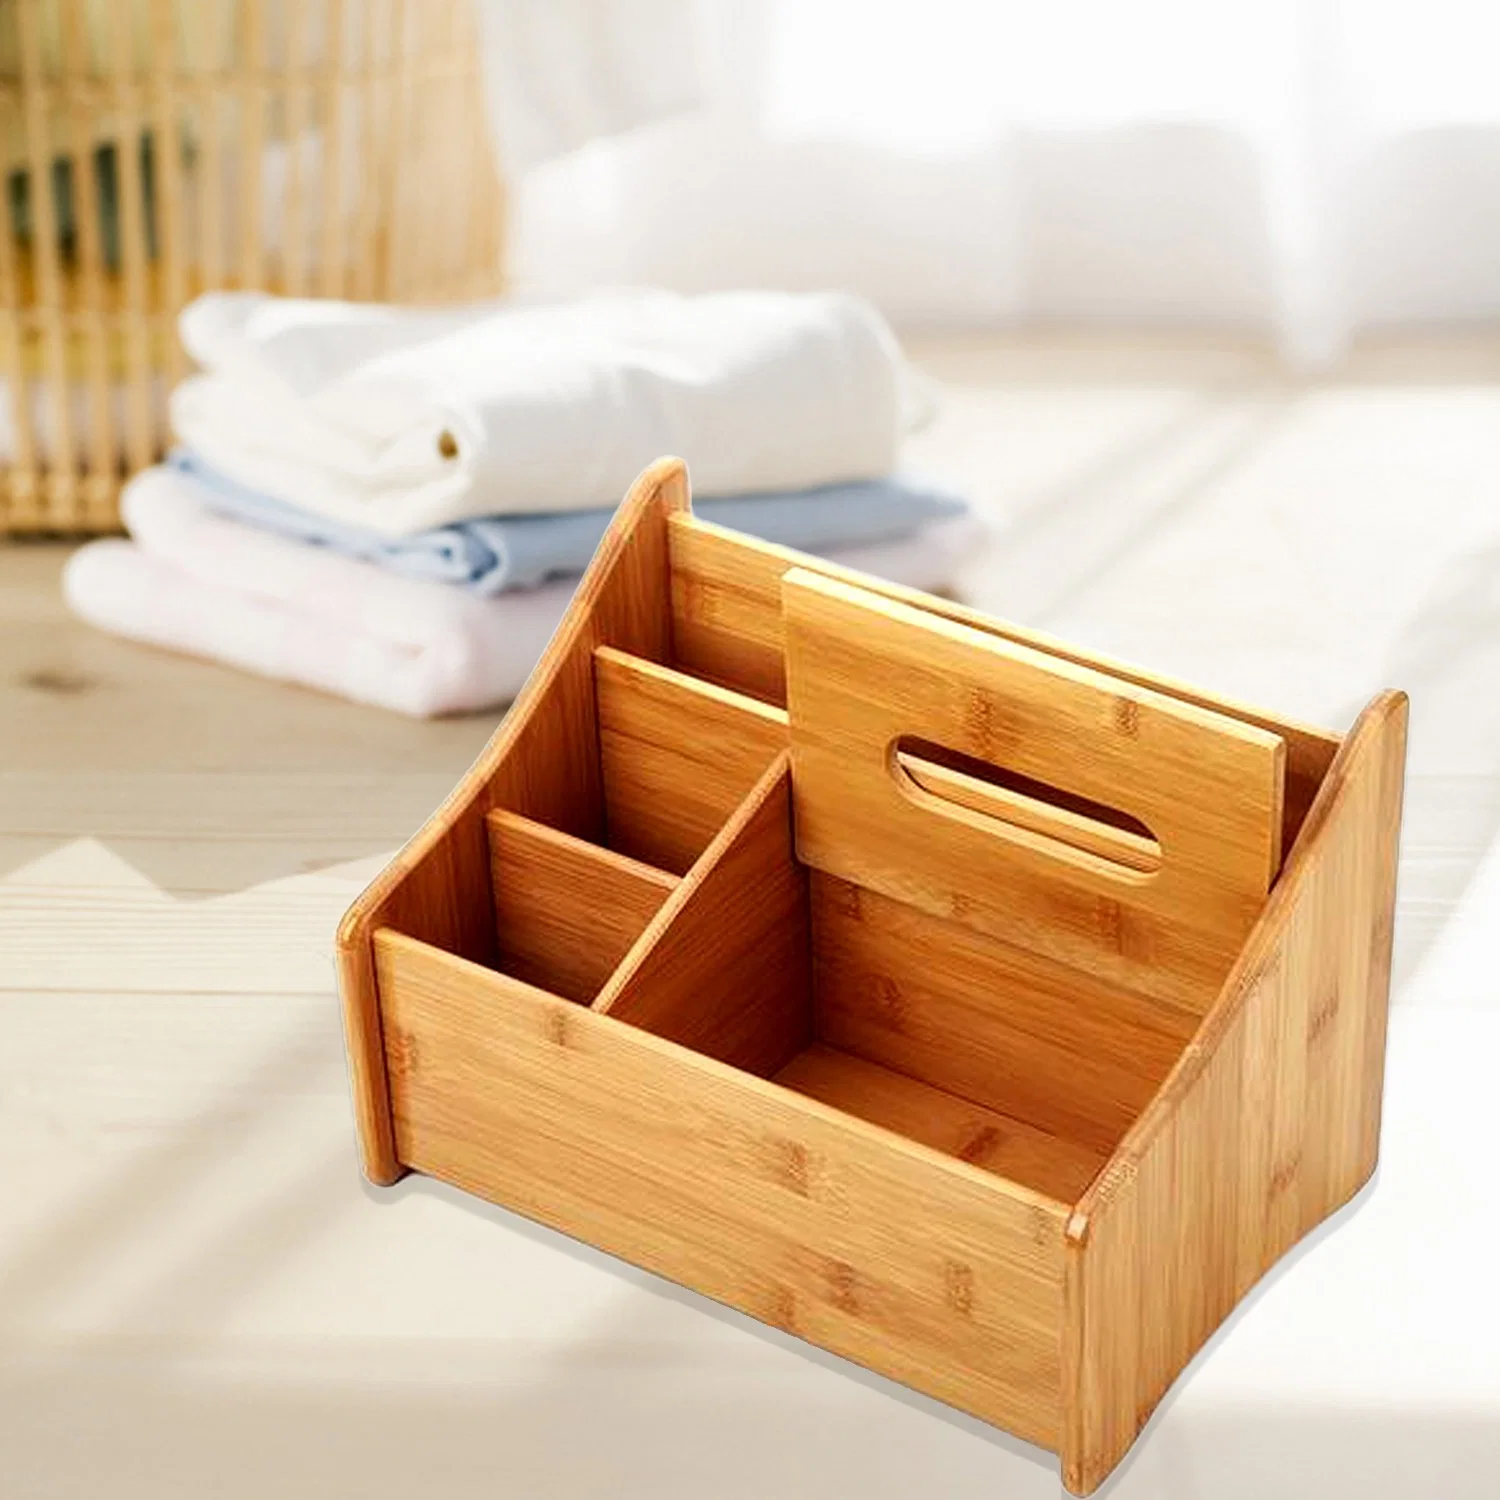 Caja de tejido de bambú creativo multifuncional para oficina y hogar Cajas de tejido de bambú